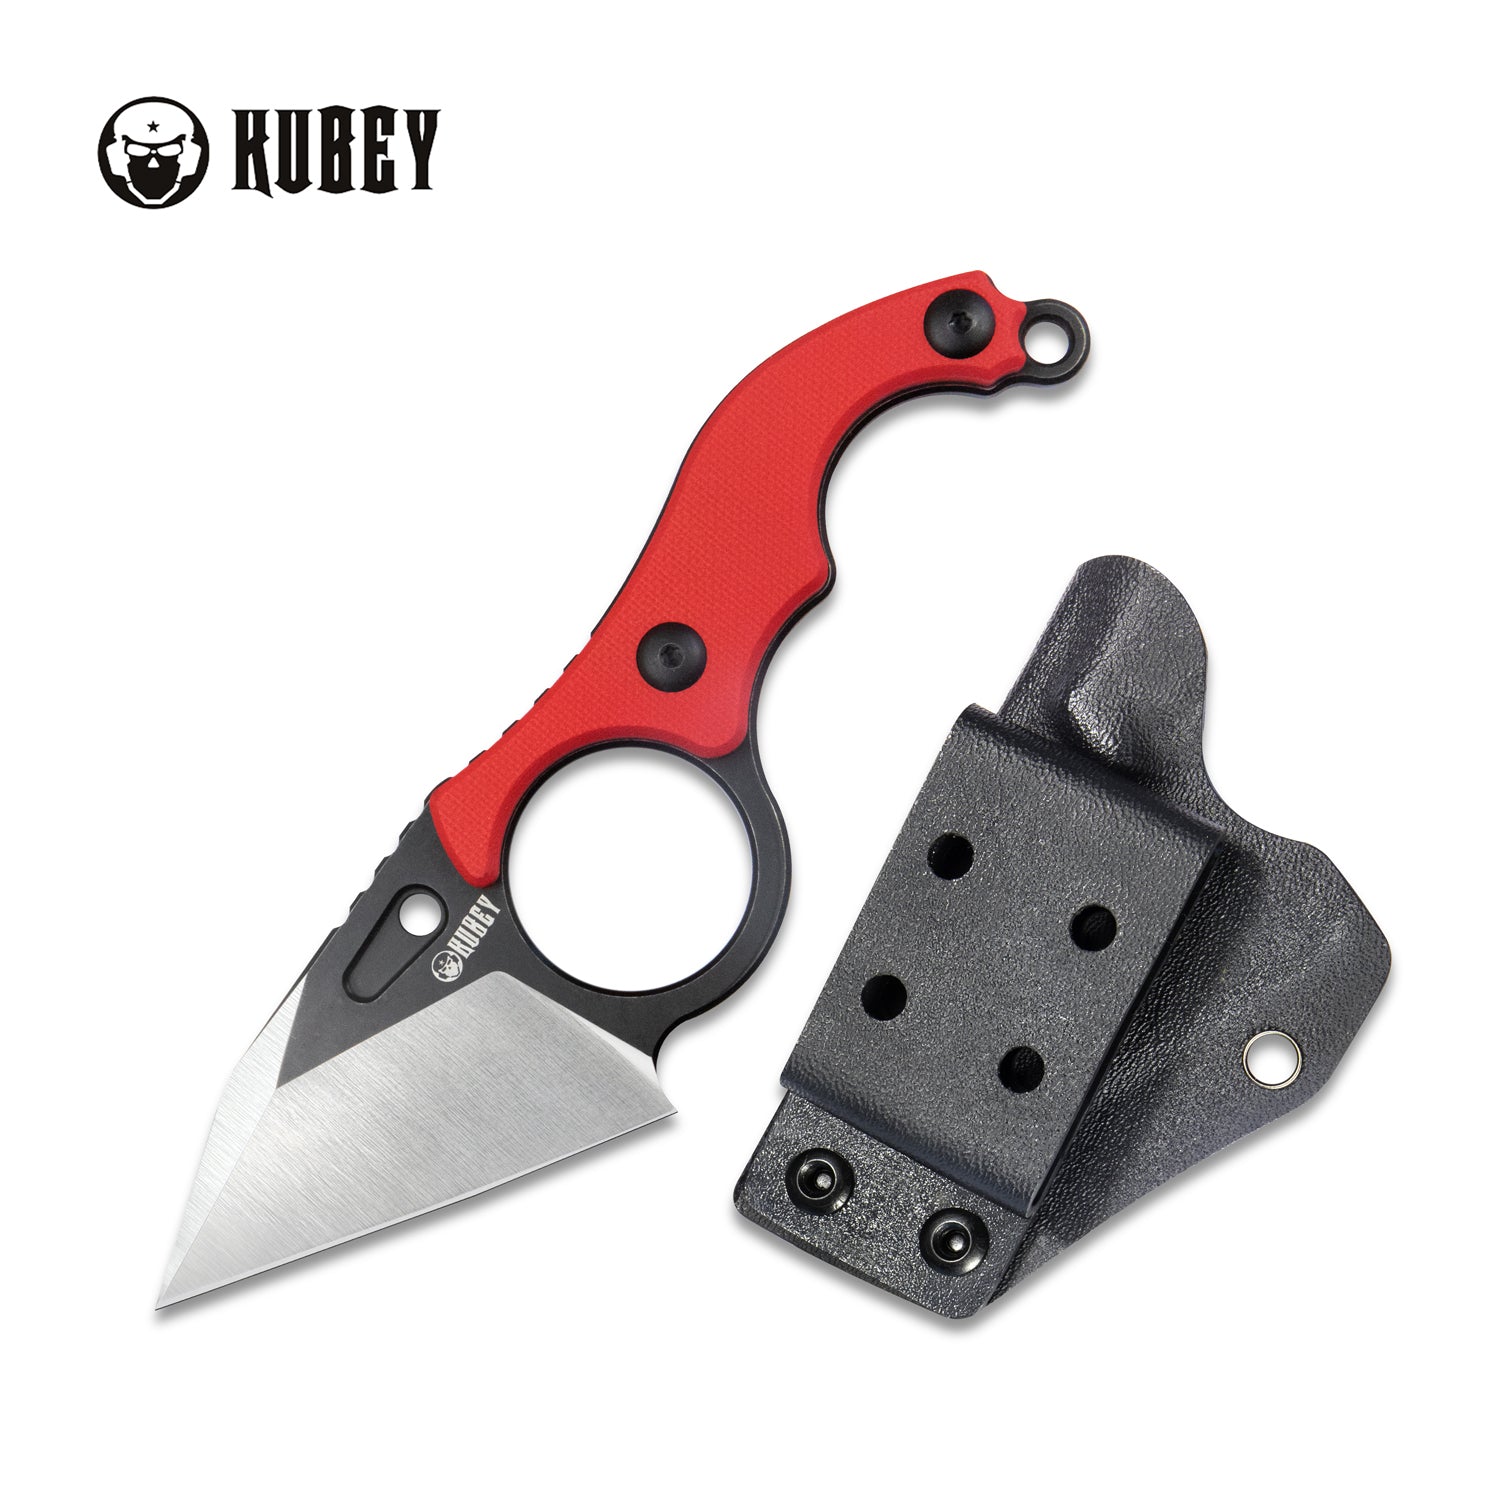 Hippocam Kubey Klappmesser Fixed Blade Knife Finger Ring Red G10 Handle 2.36" Satin and Blackwash D2 Blade KU166D